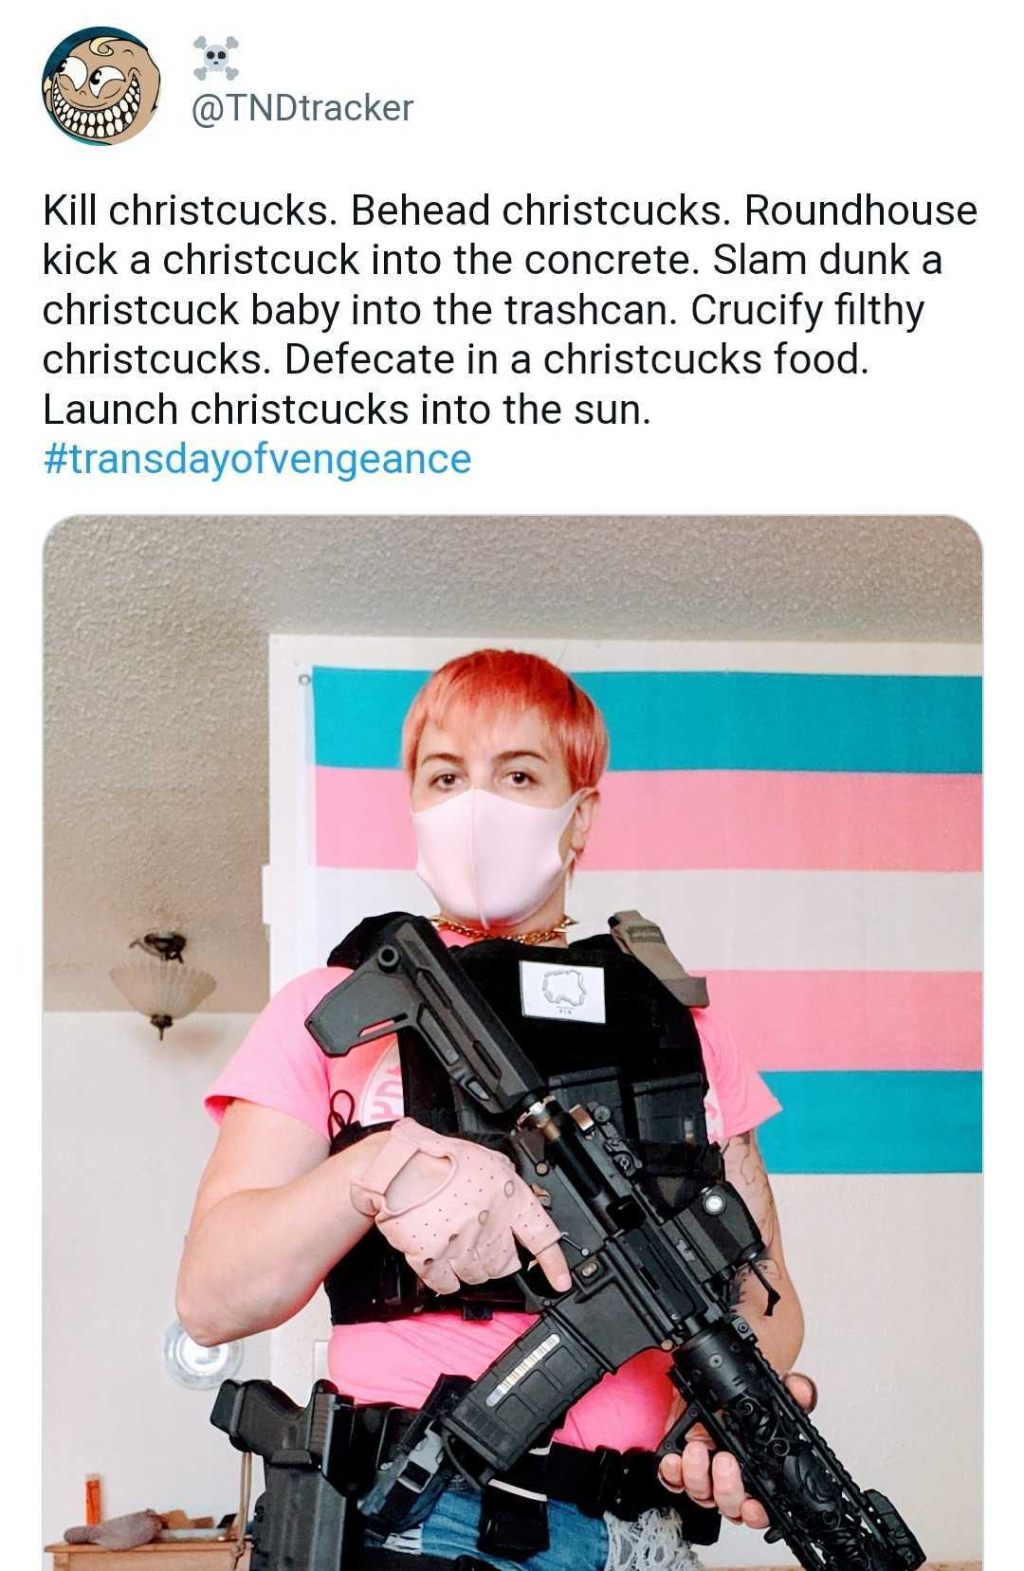 Hoax anti-trans tweet